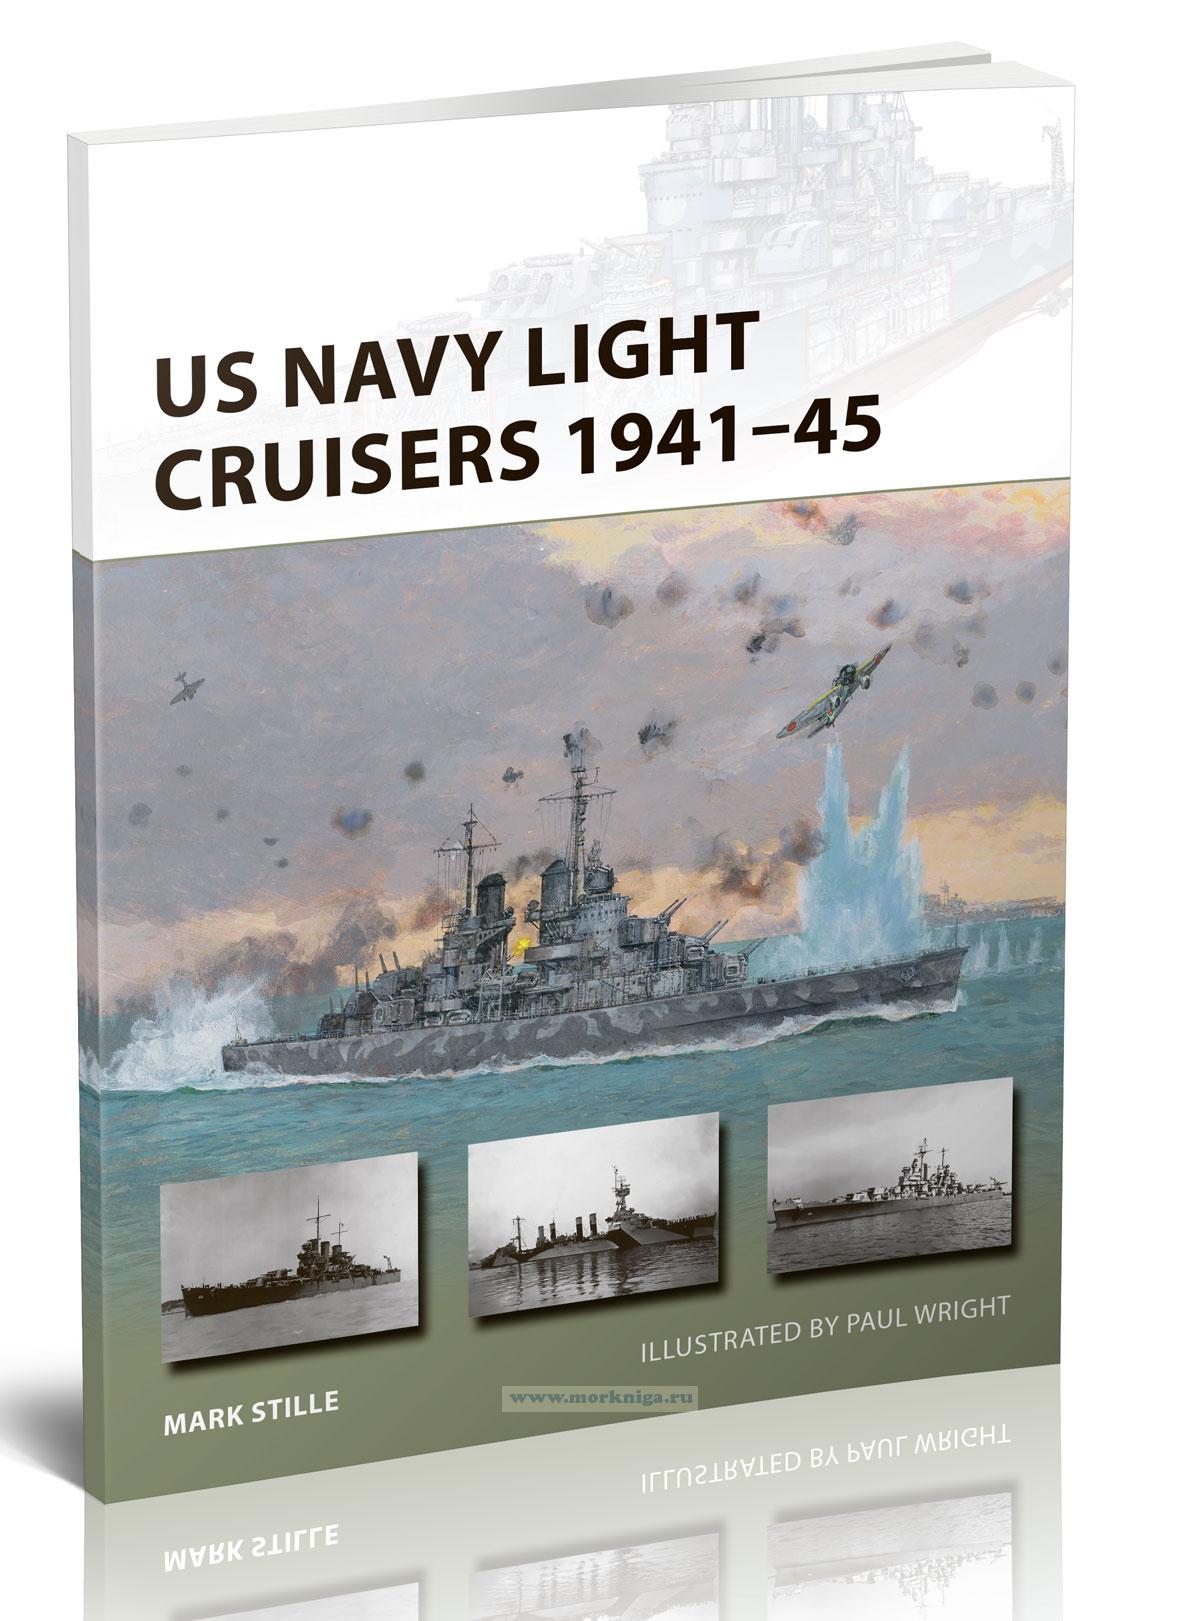 US Navy Light Cruisers 1941-45/Легкие крейсера ВМС США в 1941-45 годах